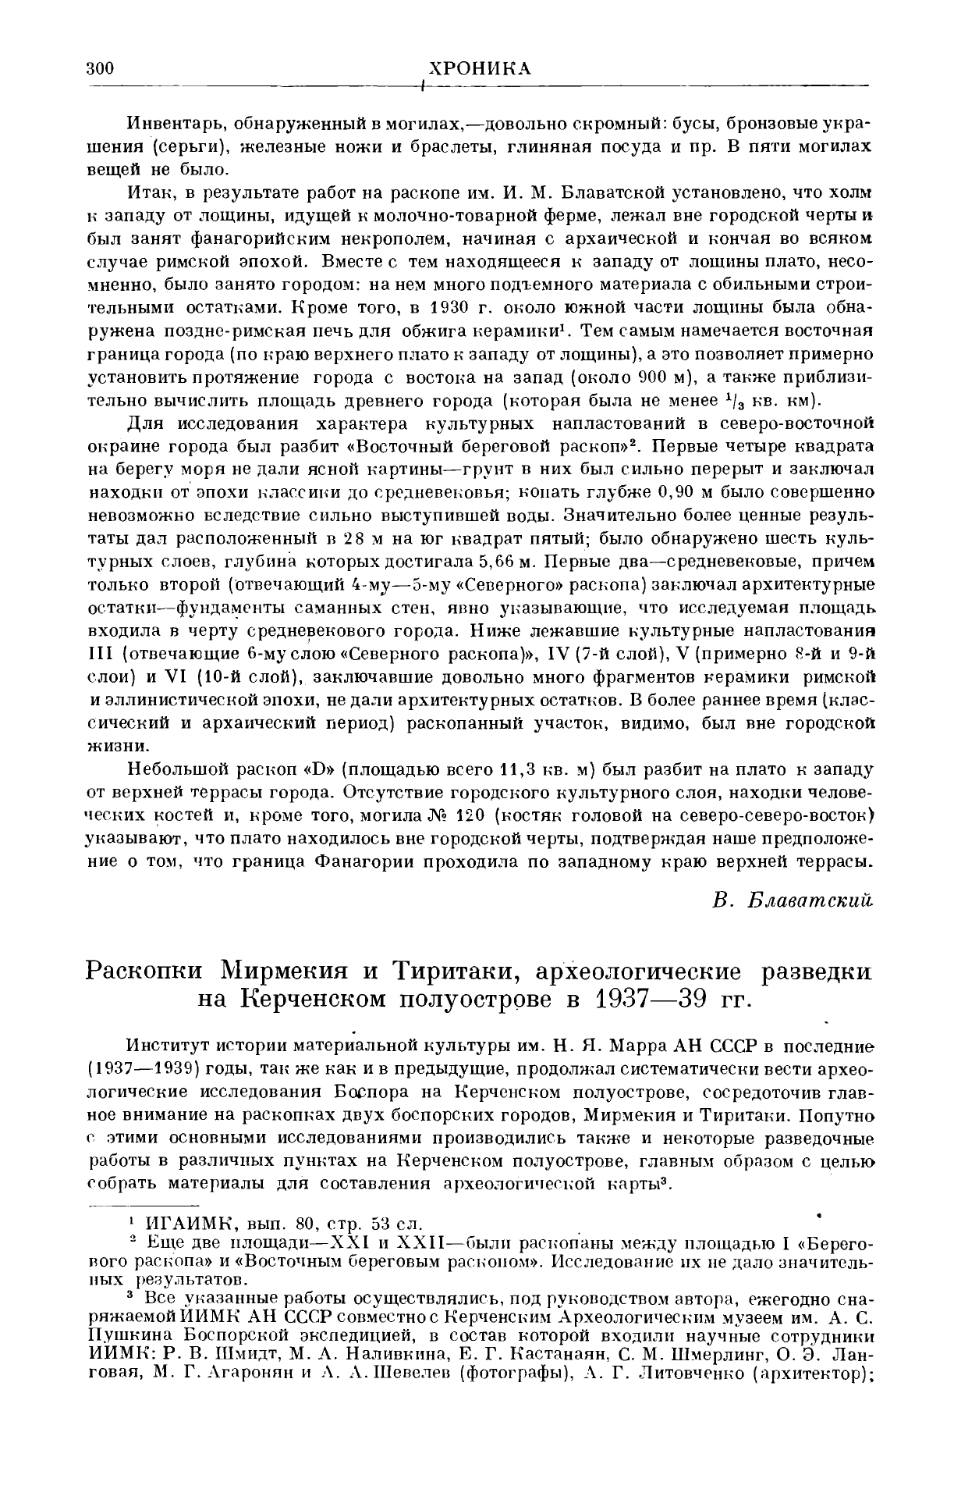 Гайдукевич В.Ф. – Раскопки Мирмекия и Тиритаки, археологические разведки на Керченском полуострове в 1937–39 гг